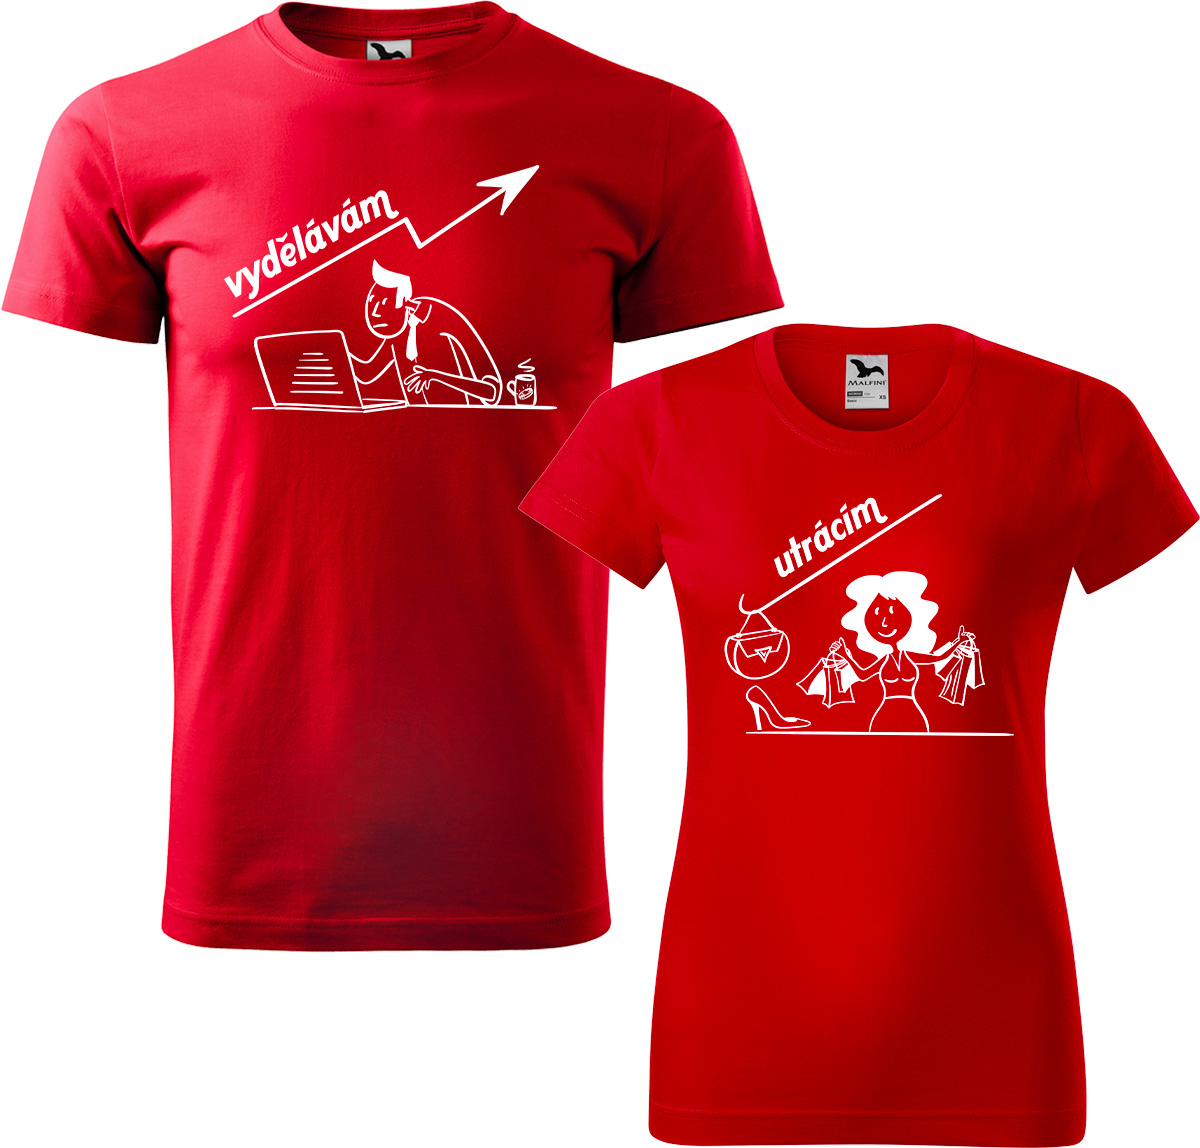 Trička pro páry - Vydělává, utrácí Barva: Červená (07), Velikost dámské tričko: XL, Velikost pánské tričko: S